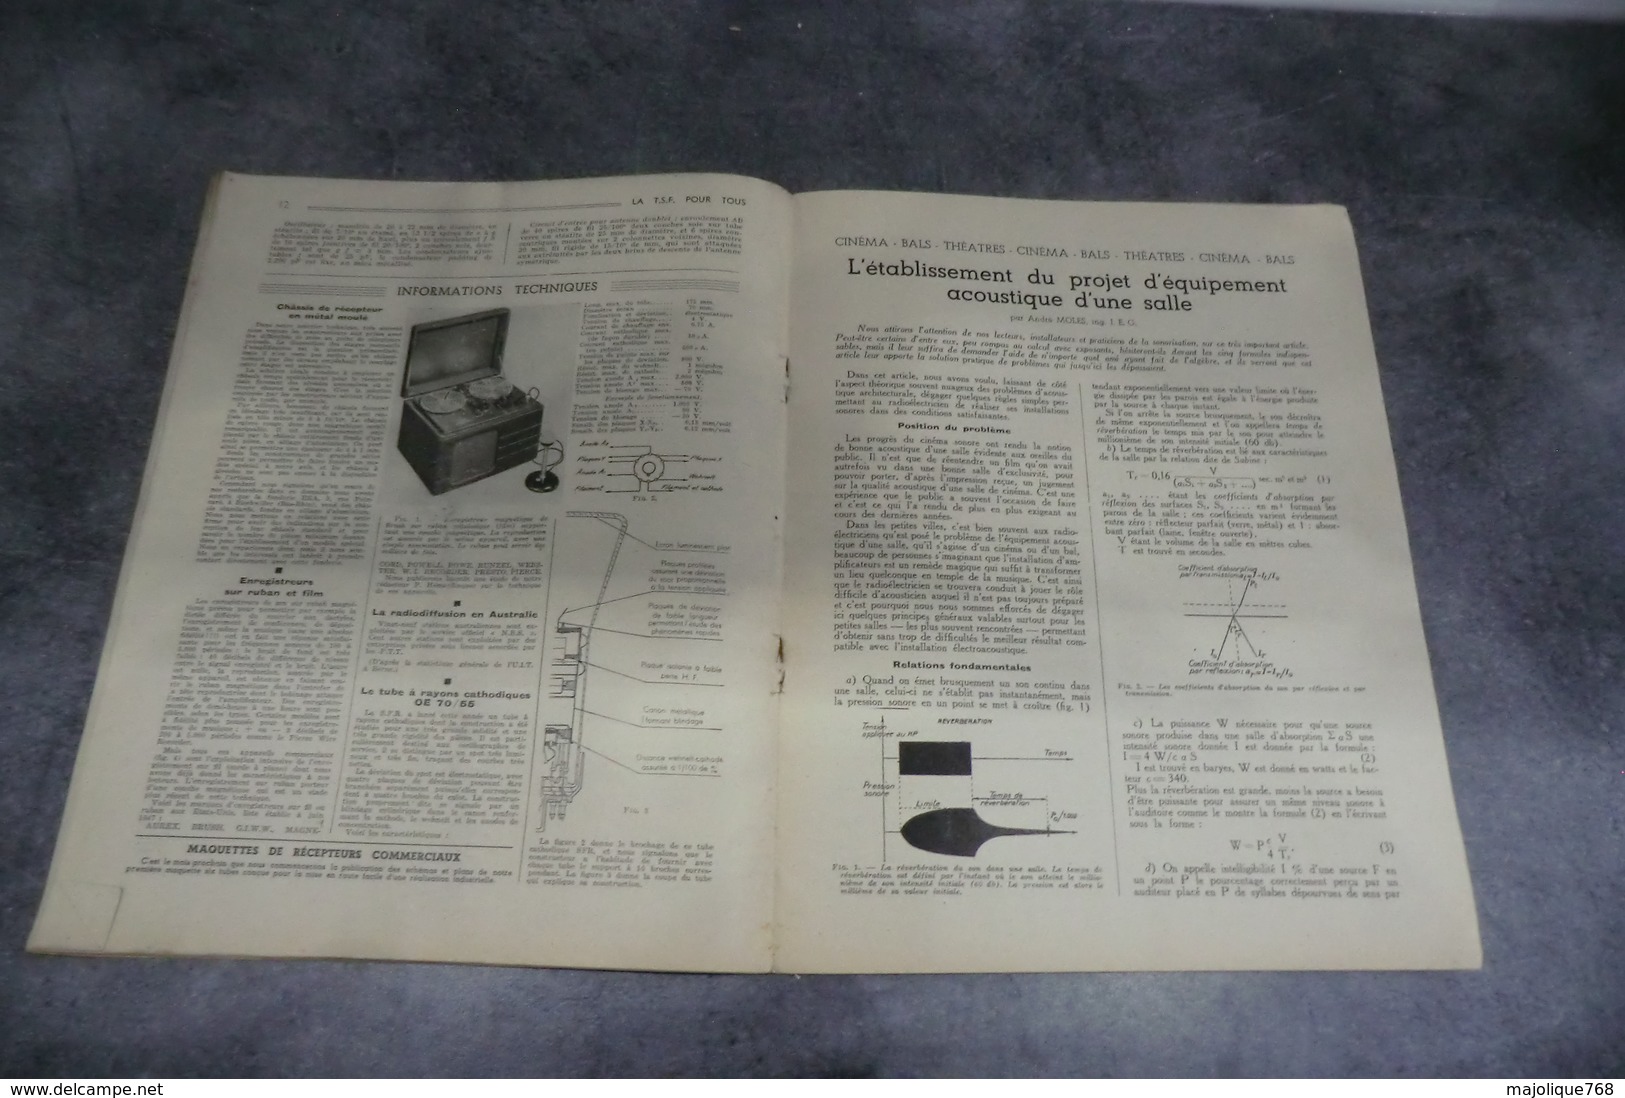 Revue - T.S.F Pour TOUS - Revue Mensuelle Des Professionnels De La Radio - N°231 De Janvier 1948 - - Libros Y Esbozos